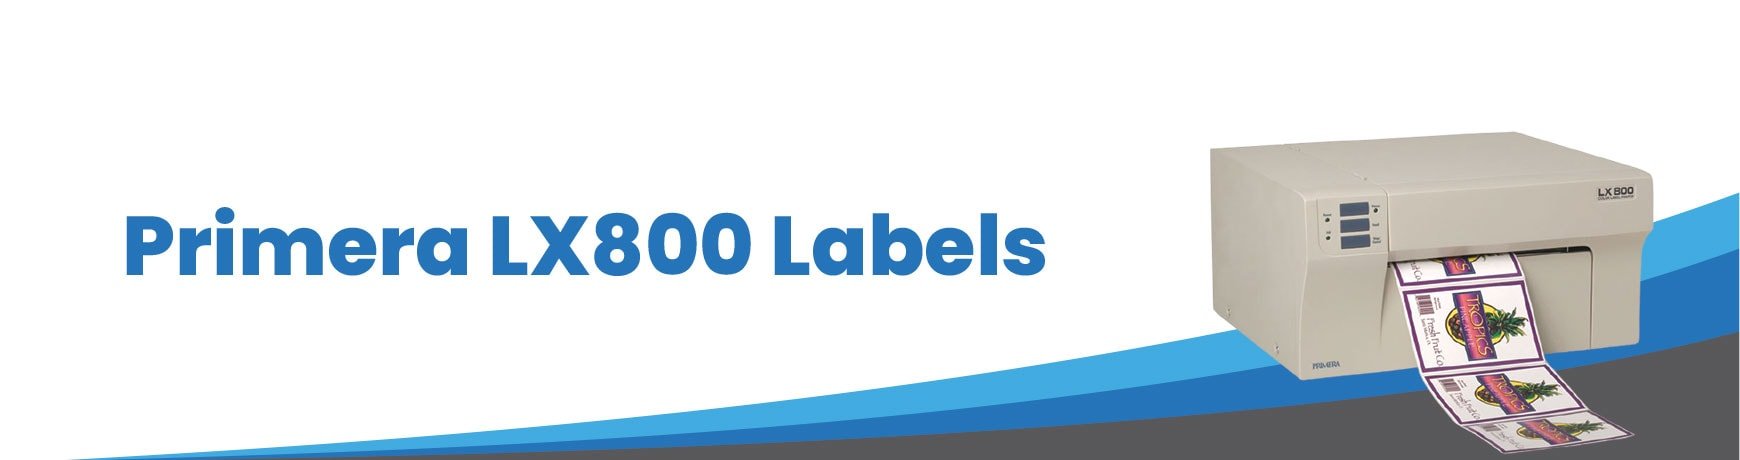 Primera LX800 Labels